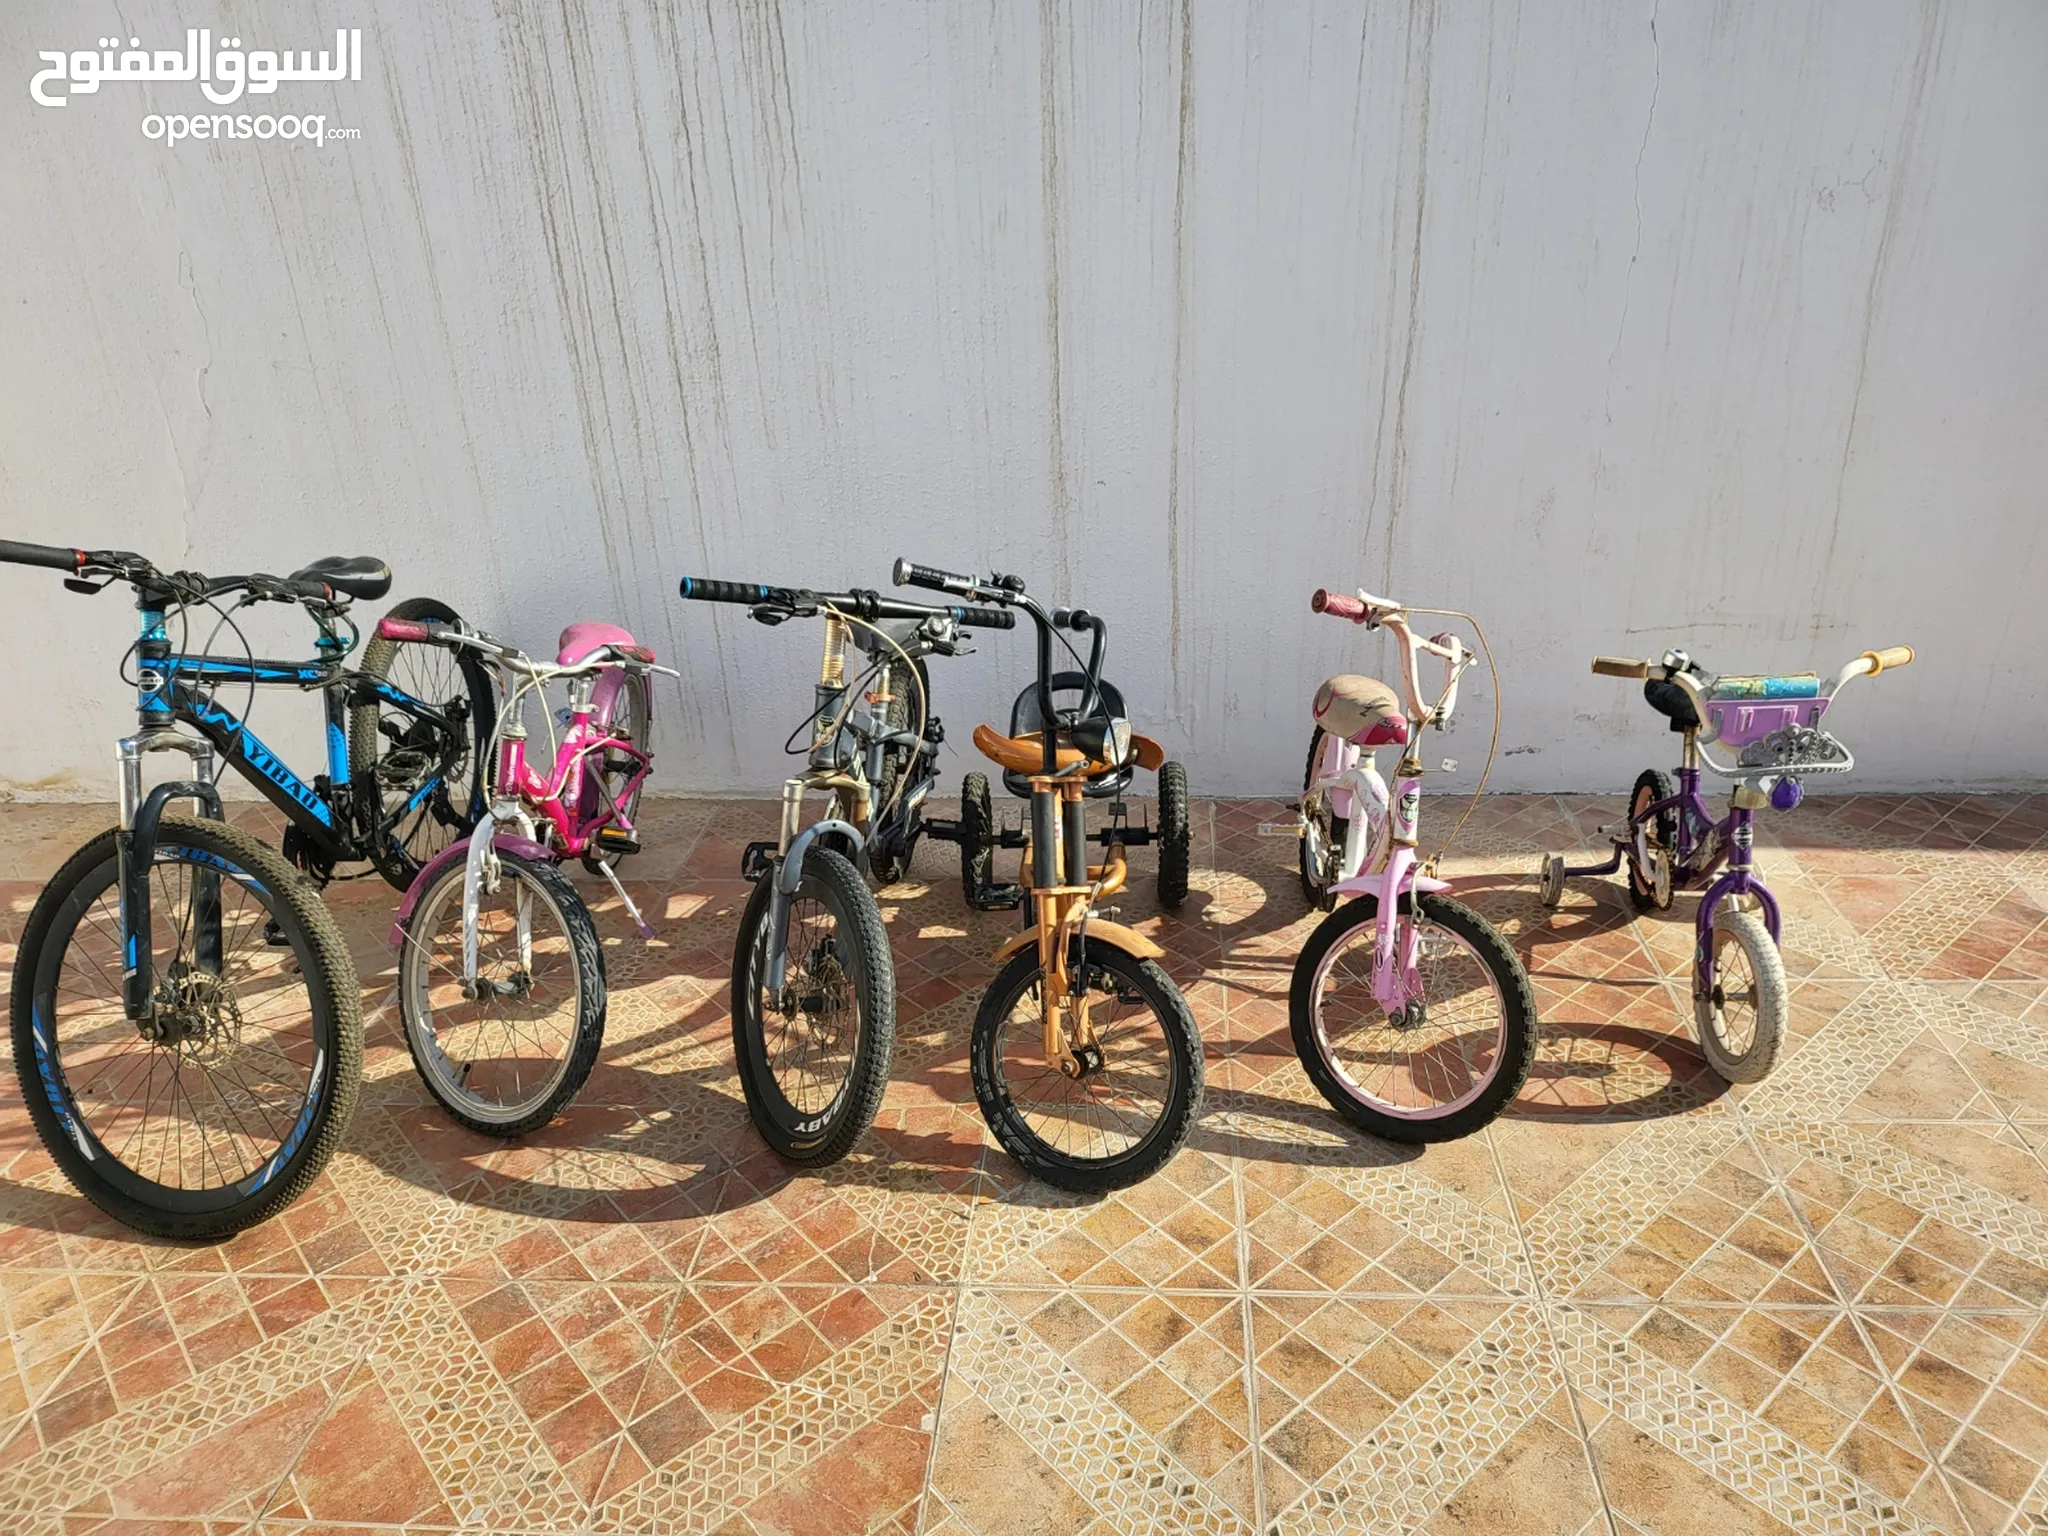 دراجات هوائية للبيع : دراجات على الطرق : جبلية : للأطفال : قطع غيار  واكسسوار : ارخص الاسعار في دبي | السوق المفتوح